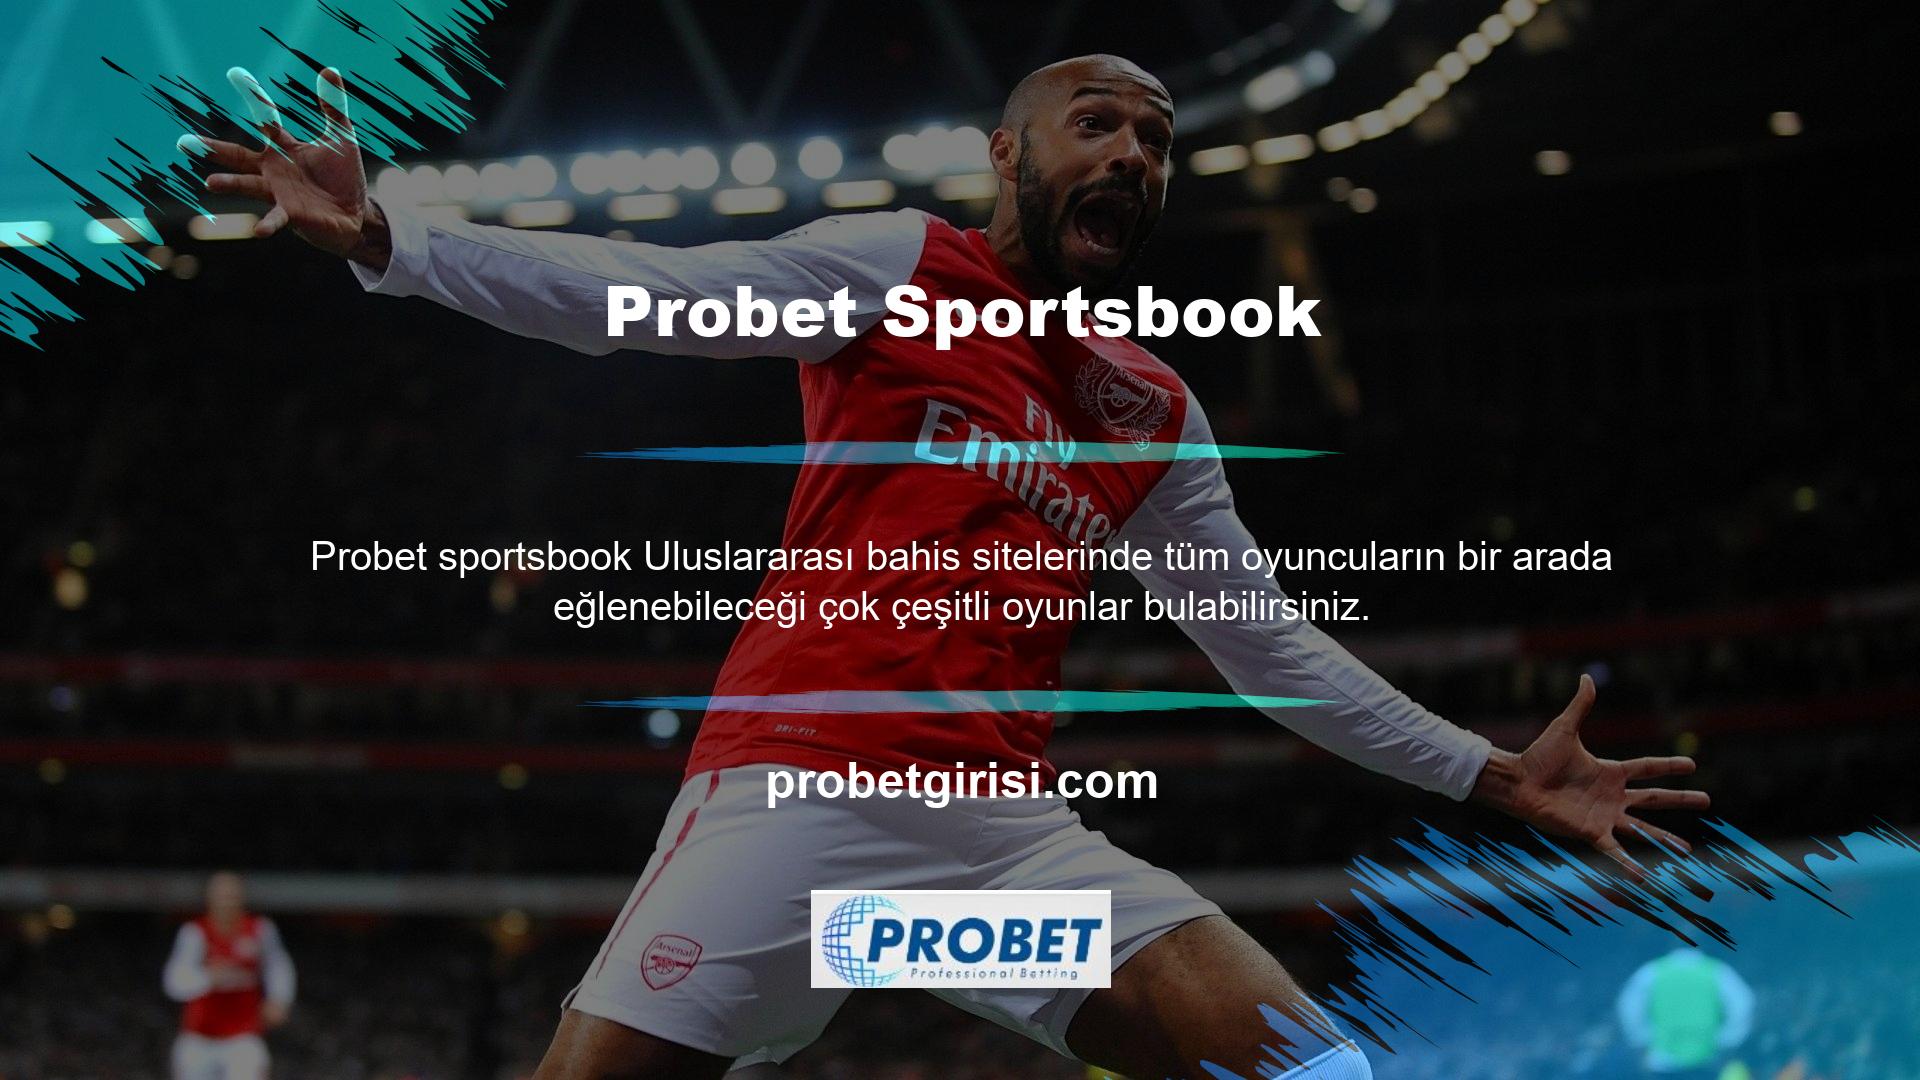 Probet Sportsbook Yorum
Hesap açmak isteyen bir bahisçi, oyuncu veya bahisçiyseniz, Probet herhangi bir şikayet gelip gelmediğini sormak için zaman ayırabilirsiniz